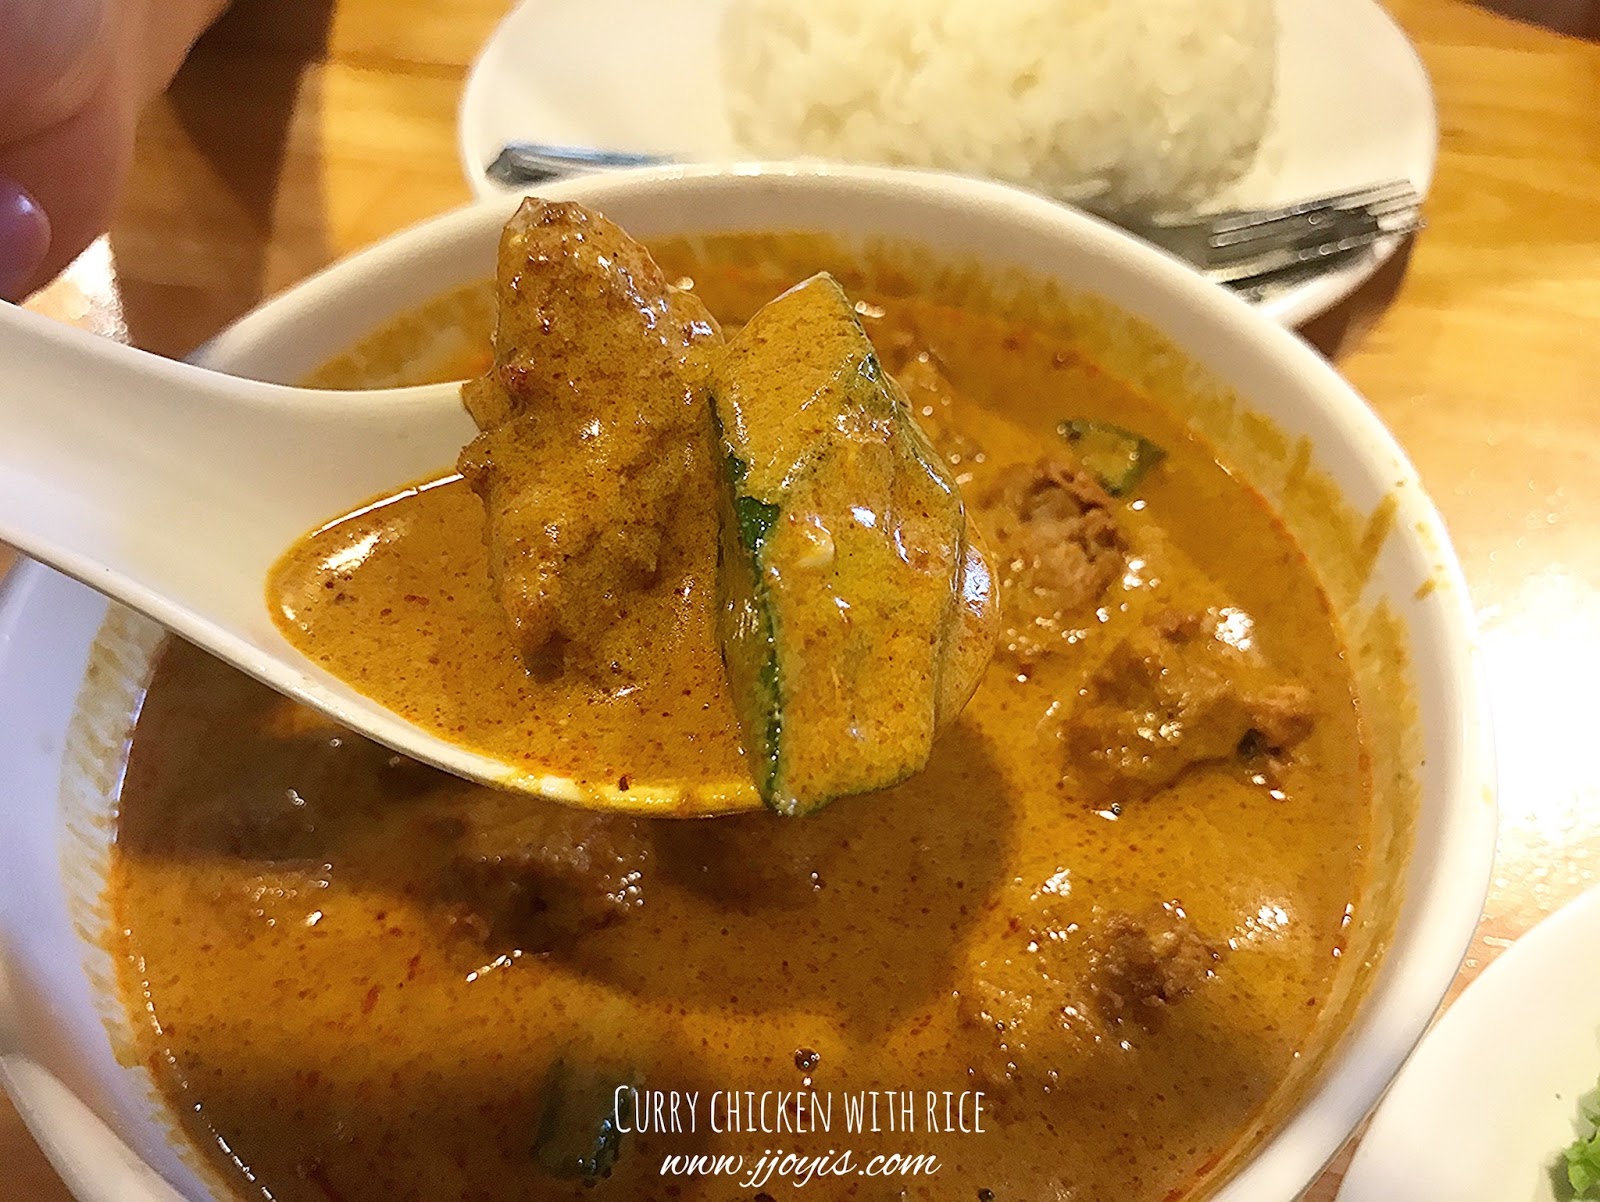 zi zi vegetarian yishun food review curry chicken